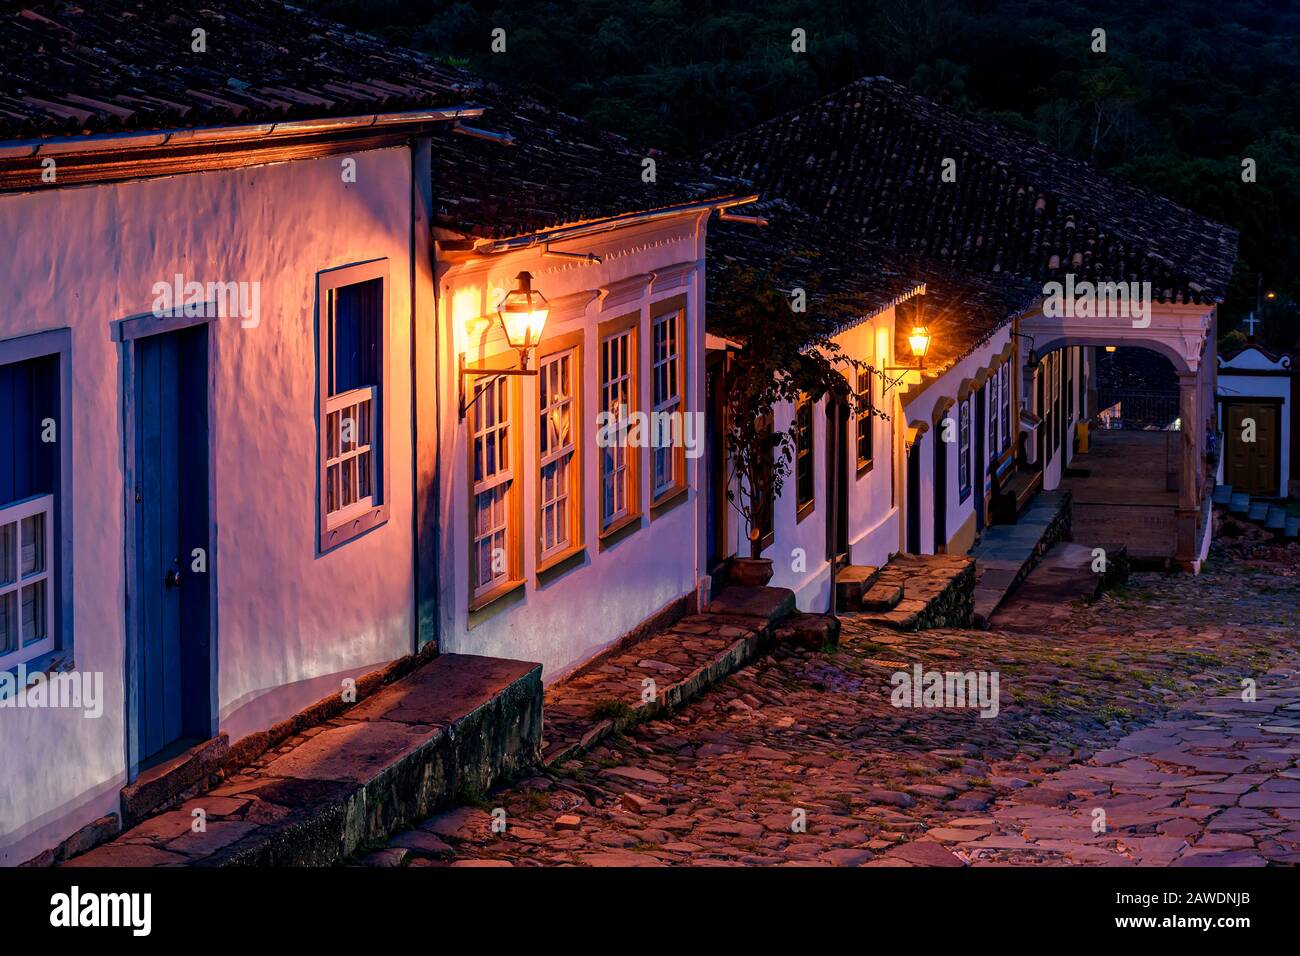 Blick auf eine alte gepflasterte Straße und die Häuser im Kolonialstil, die von Laternen in der historischen Stadt Tiradentes in Minas Gerais angezündet werden Stockfoto